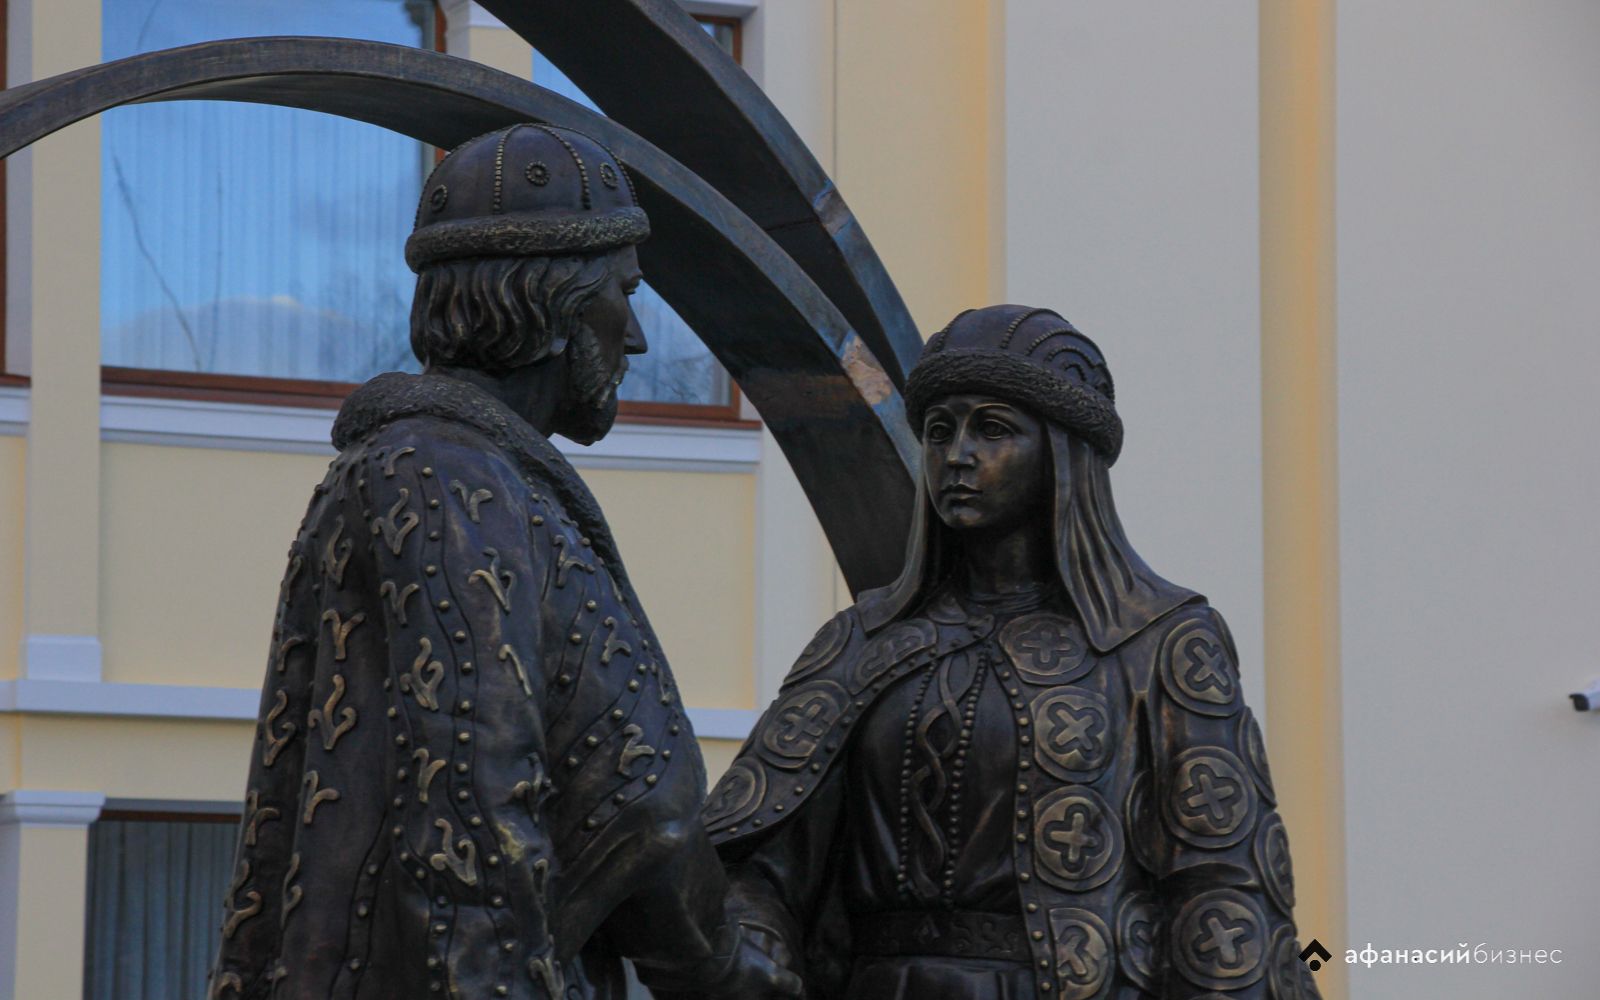 Тверь 14 век. Памятник Михаилу Тверскому и Анне Кашинской в Твери.